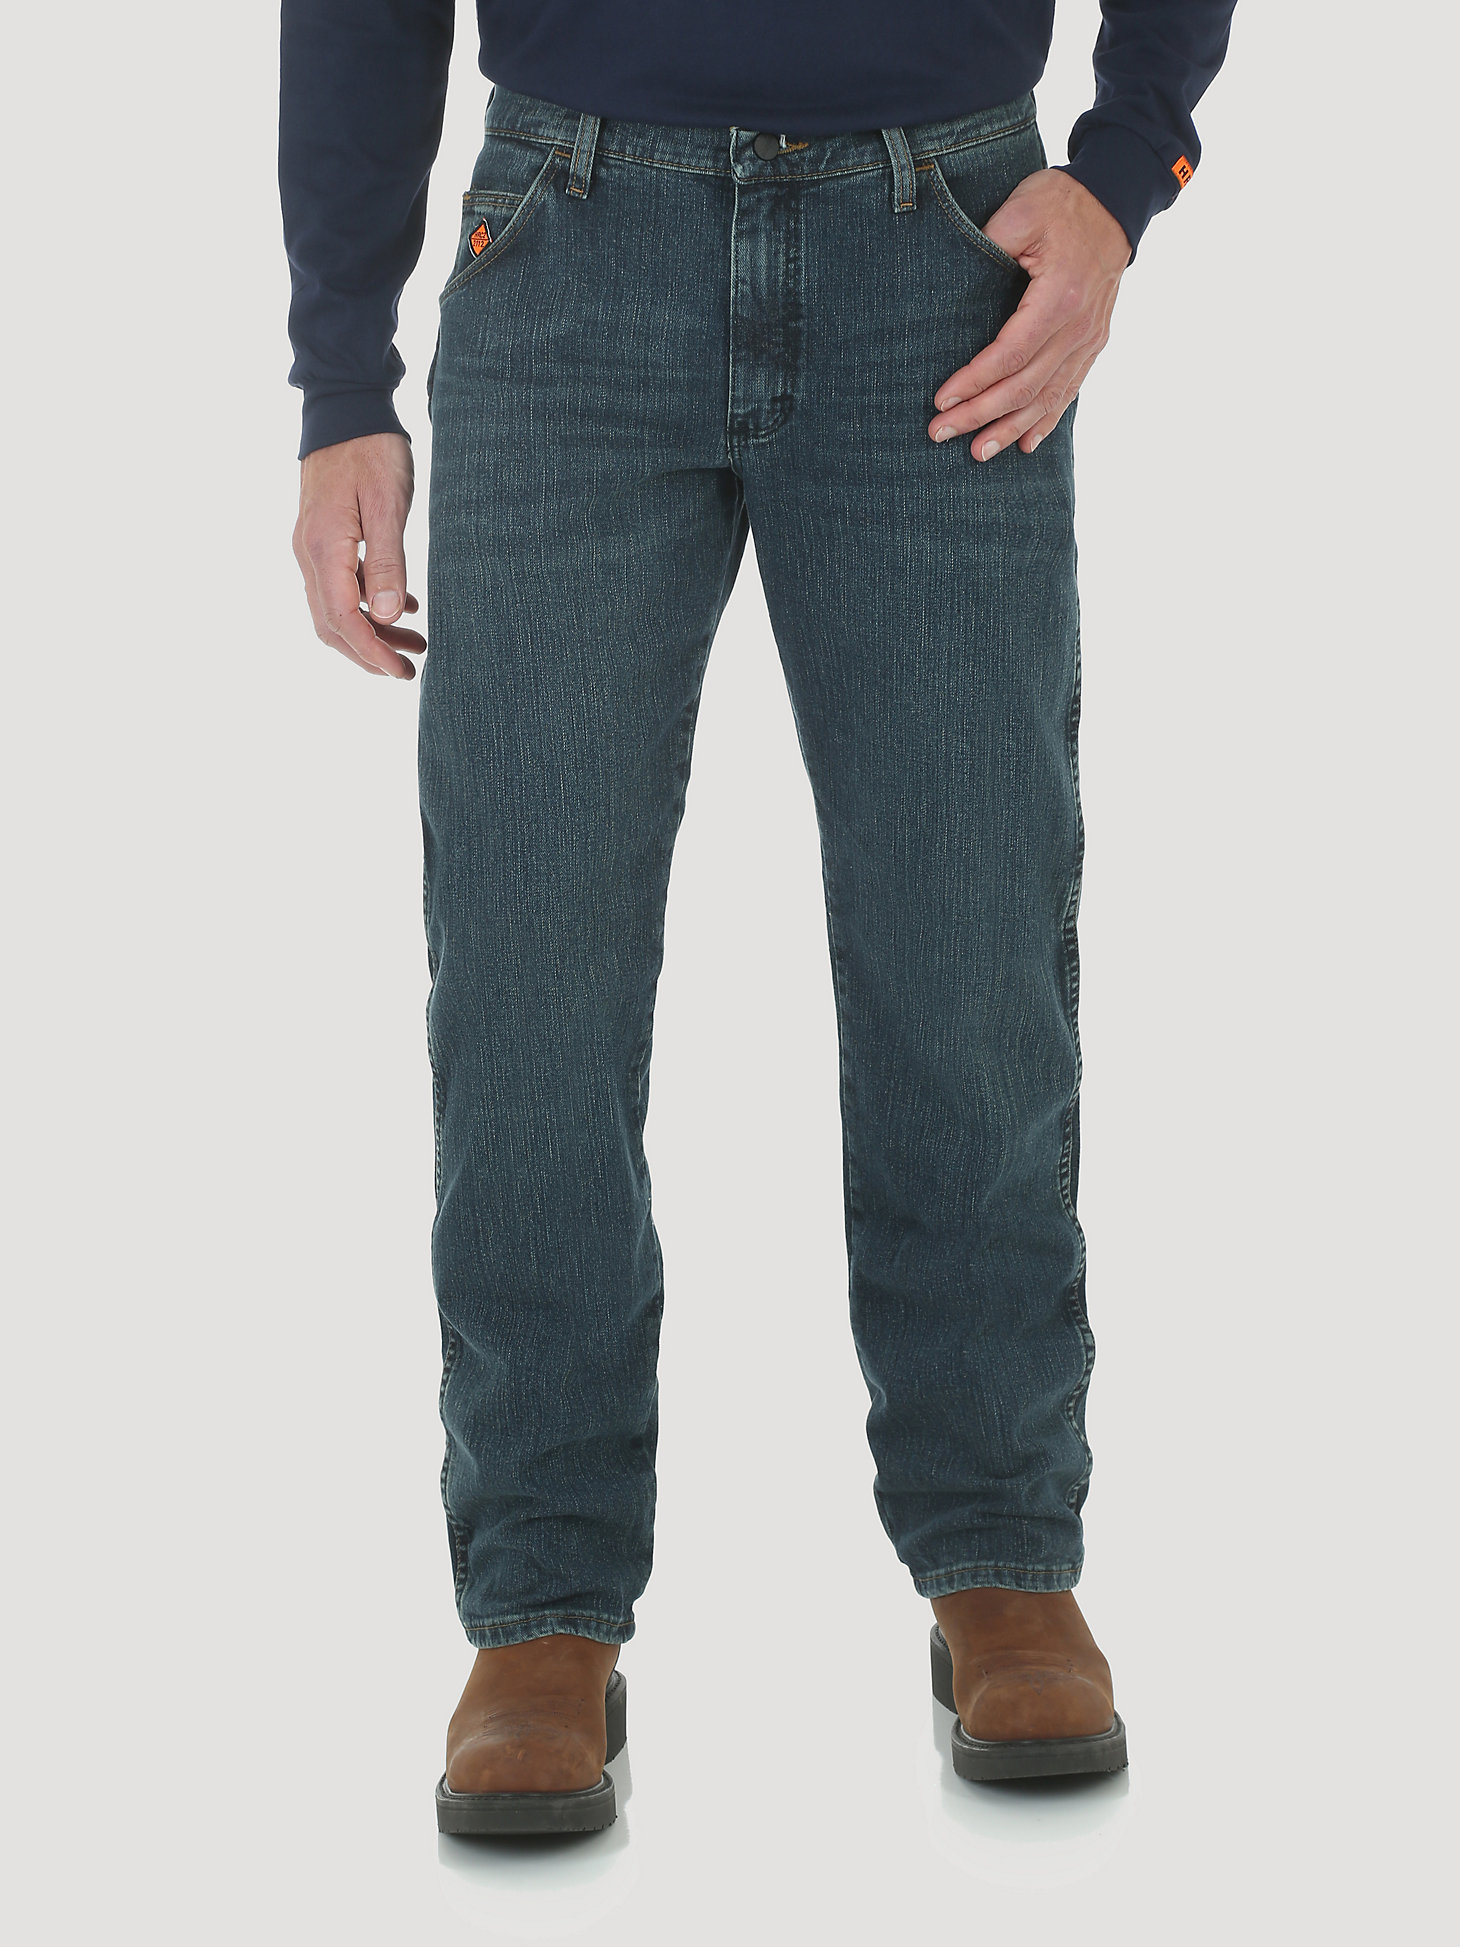 Men's Wrangler® FR Flame Resistant Advanced Comfort Regular Fit Jean